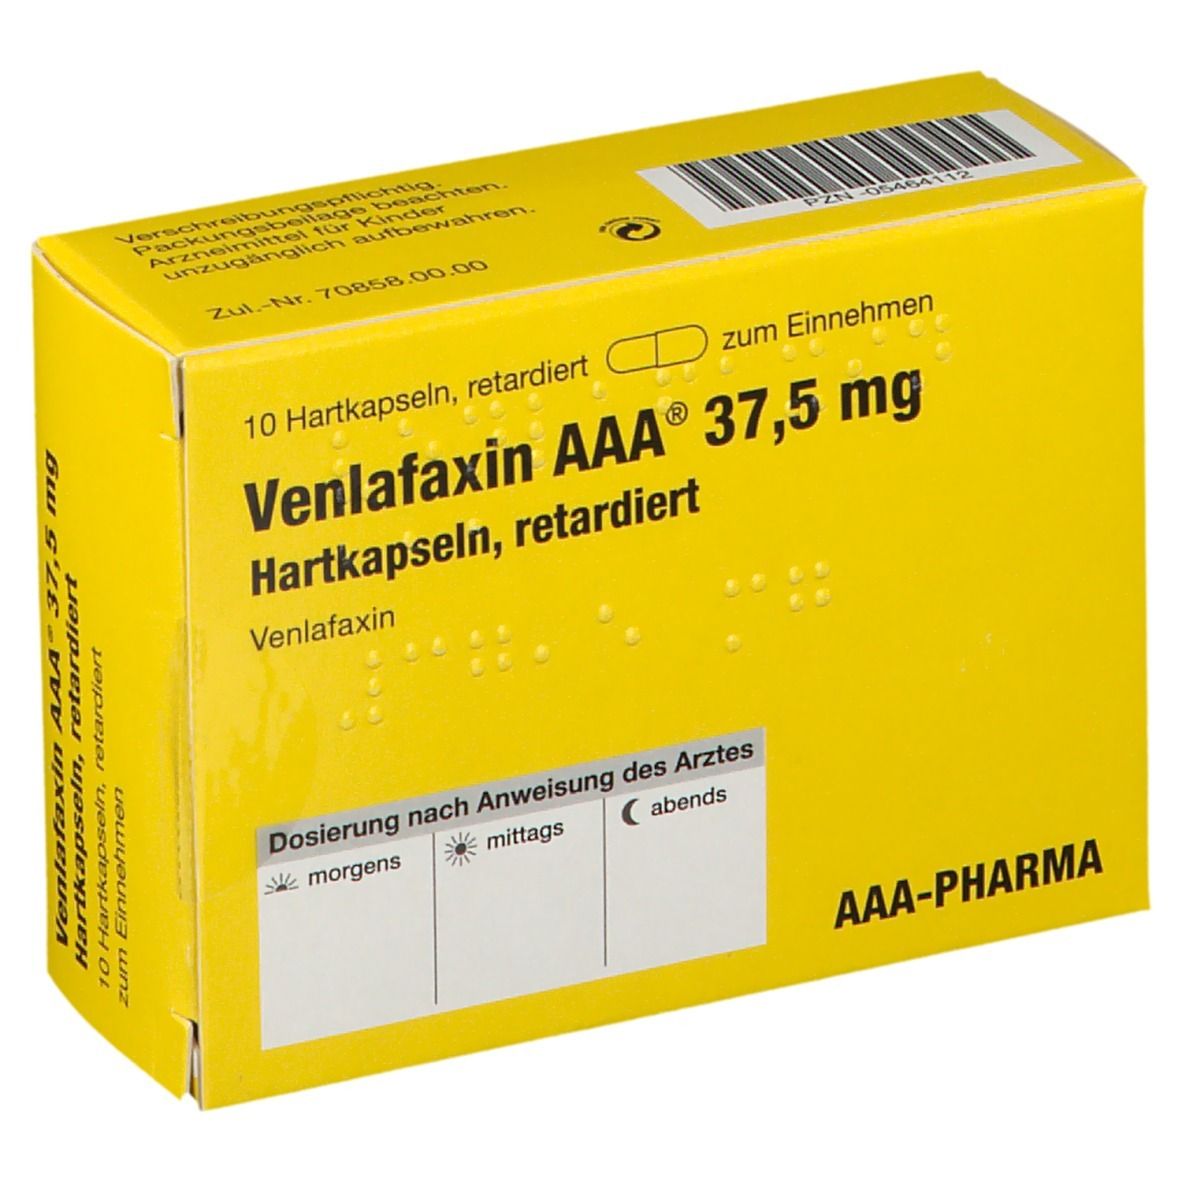 Venlafaxin AAA® 37,5 mg